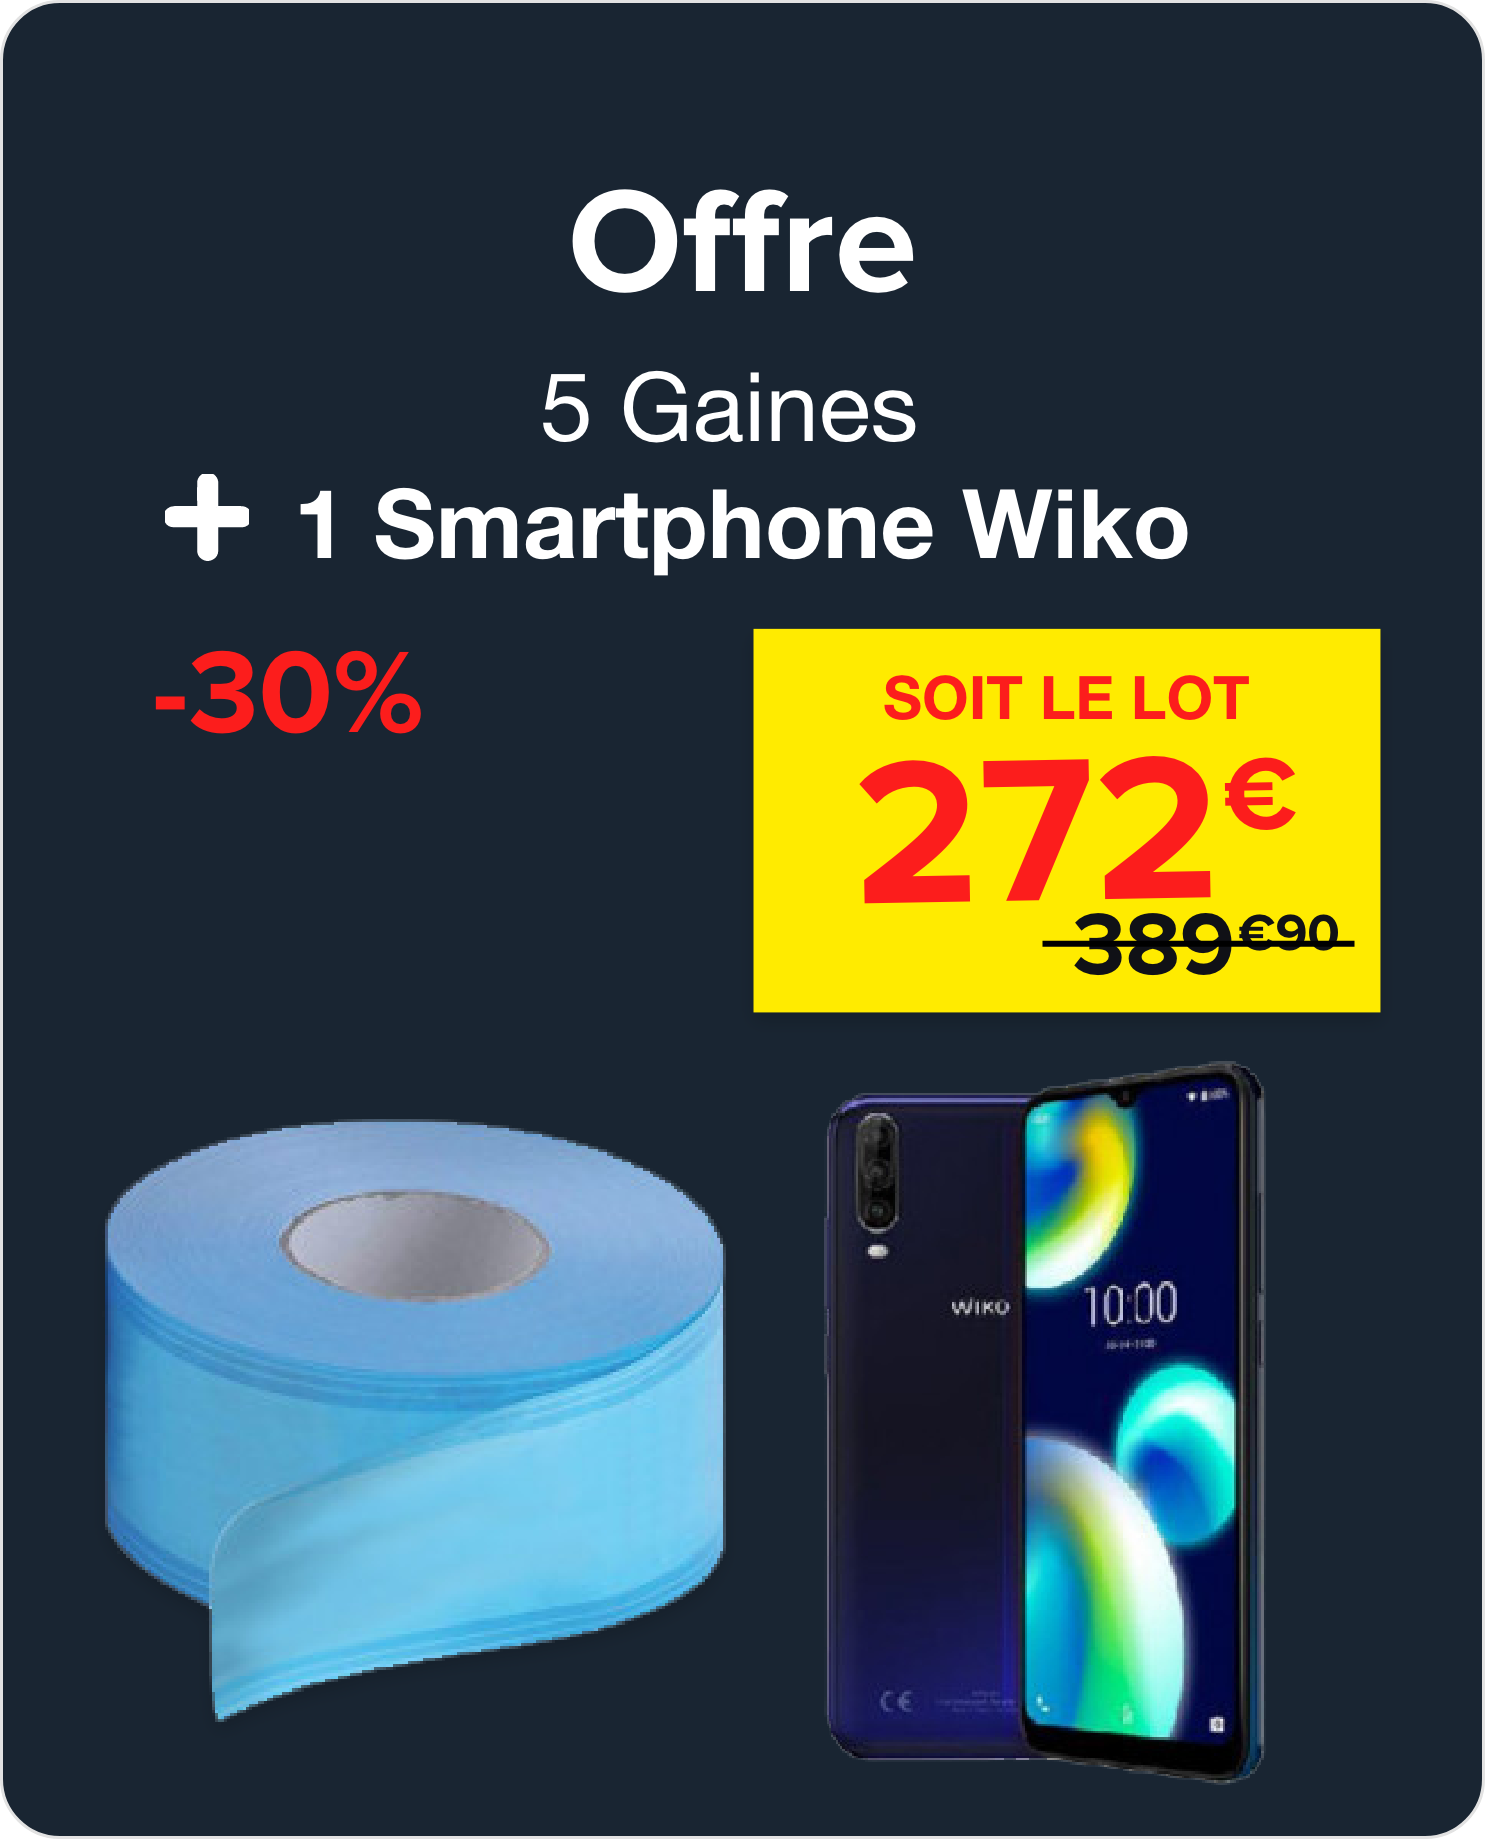 5 Gaines + 1 Smartphone Wiko (WIKO)